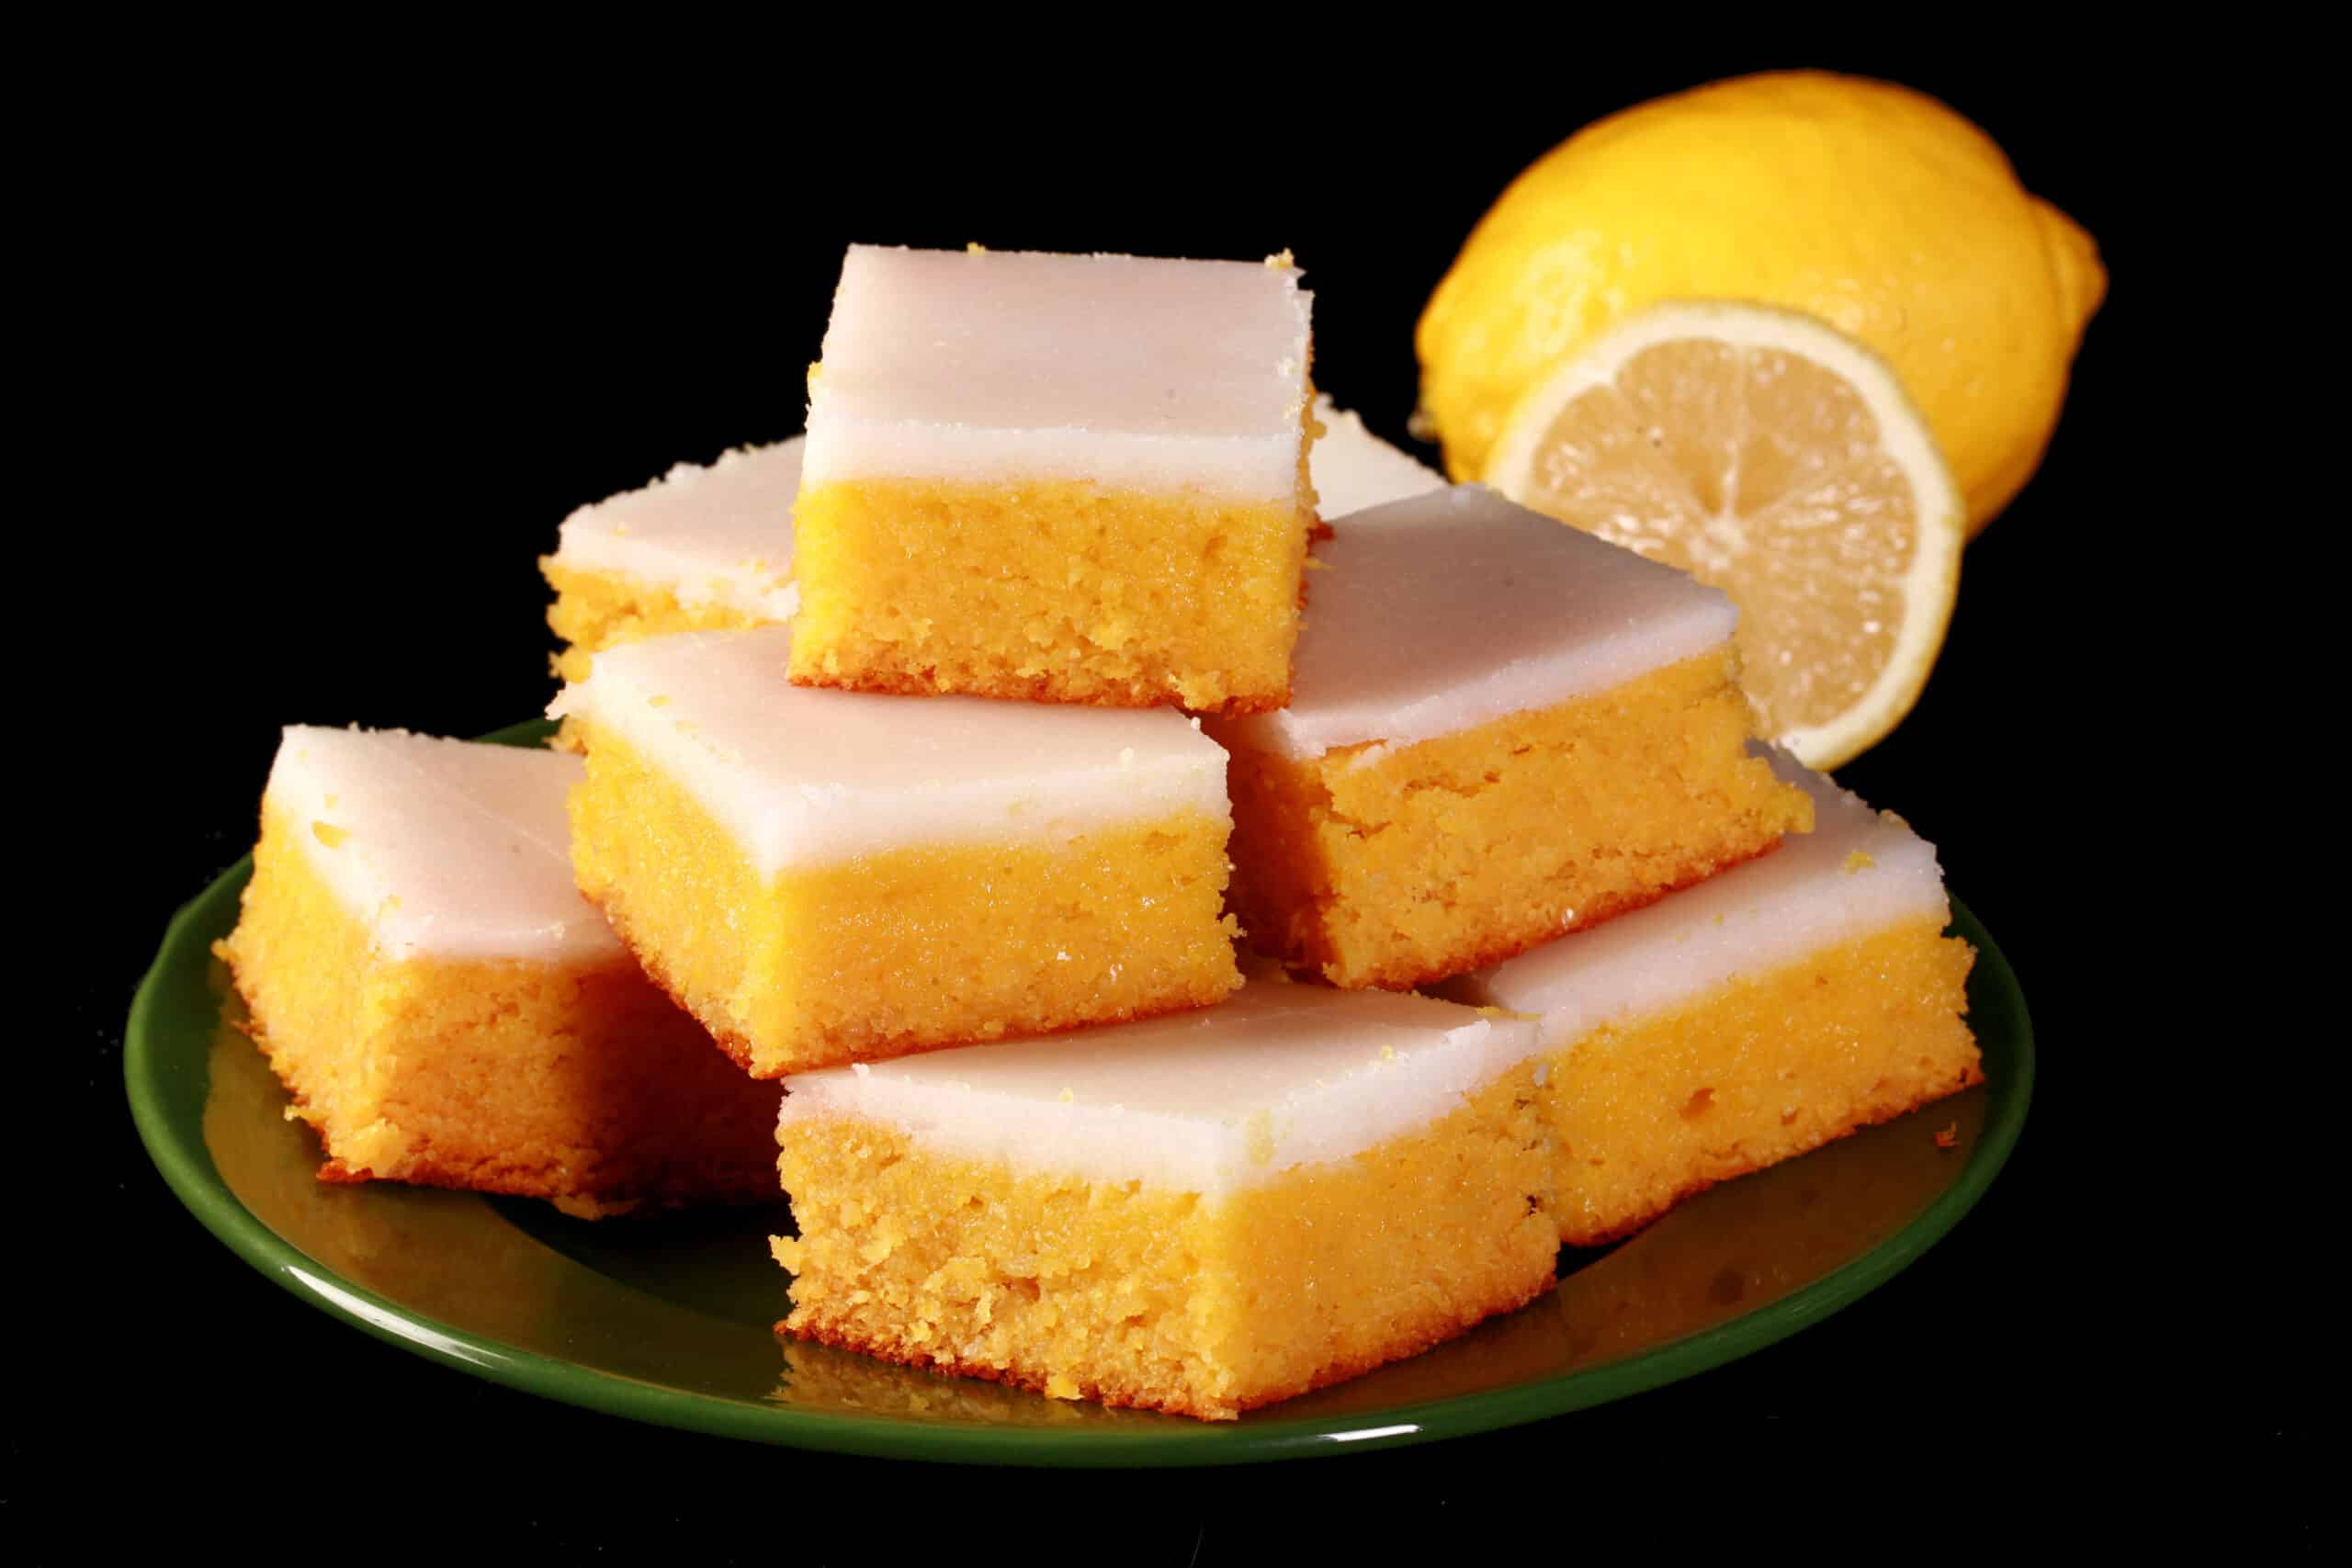 A plate of keto lemon bars topped with a white glaze.